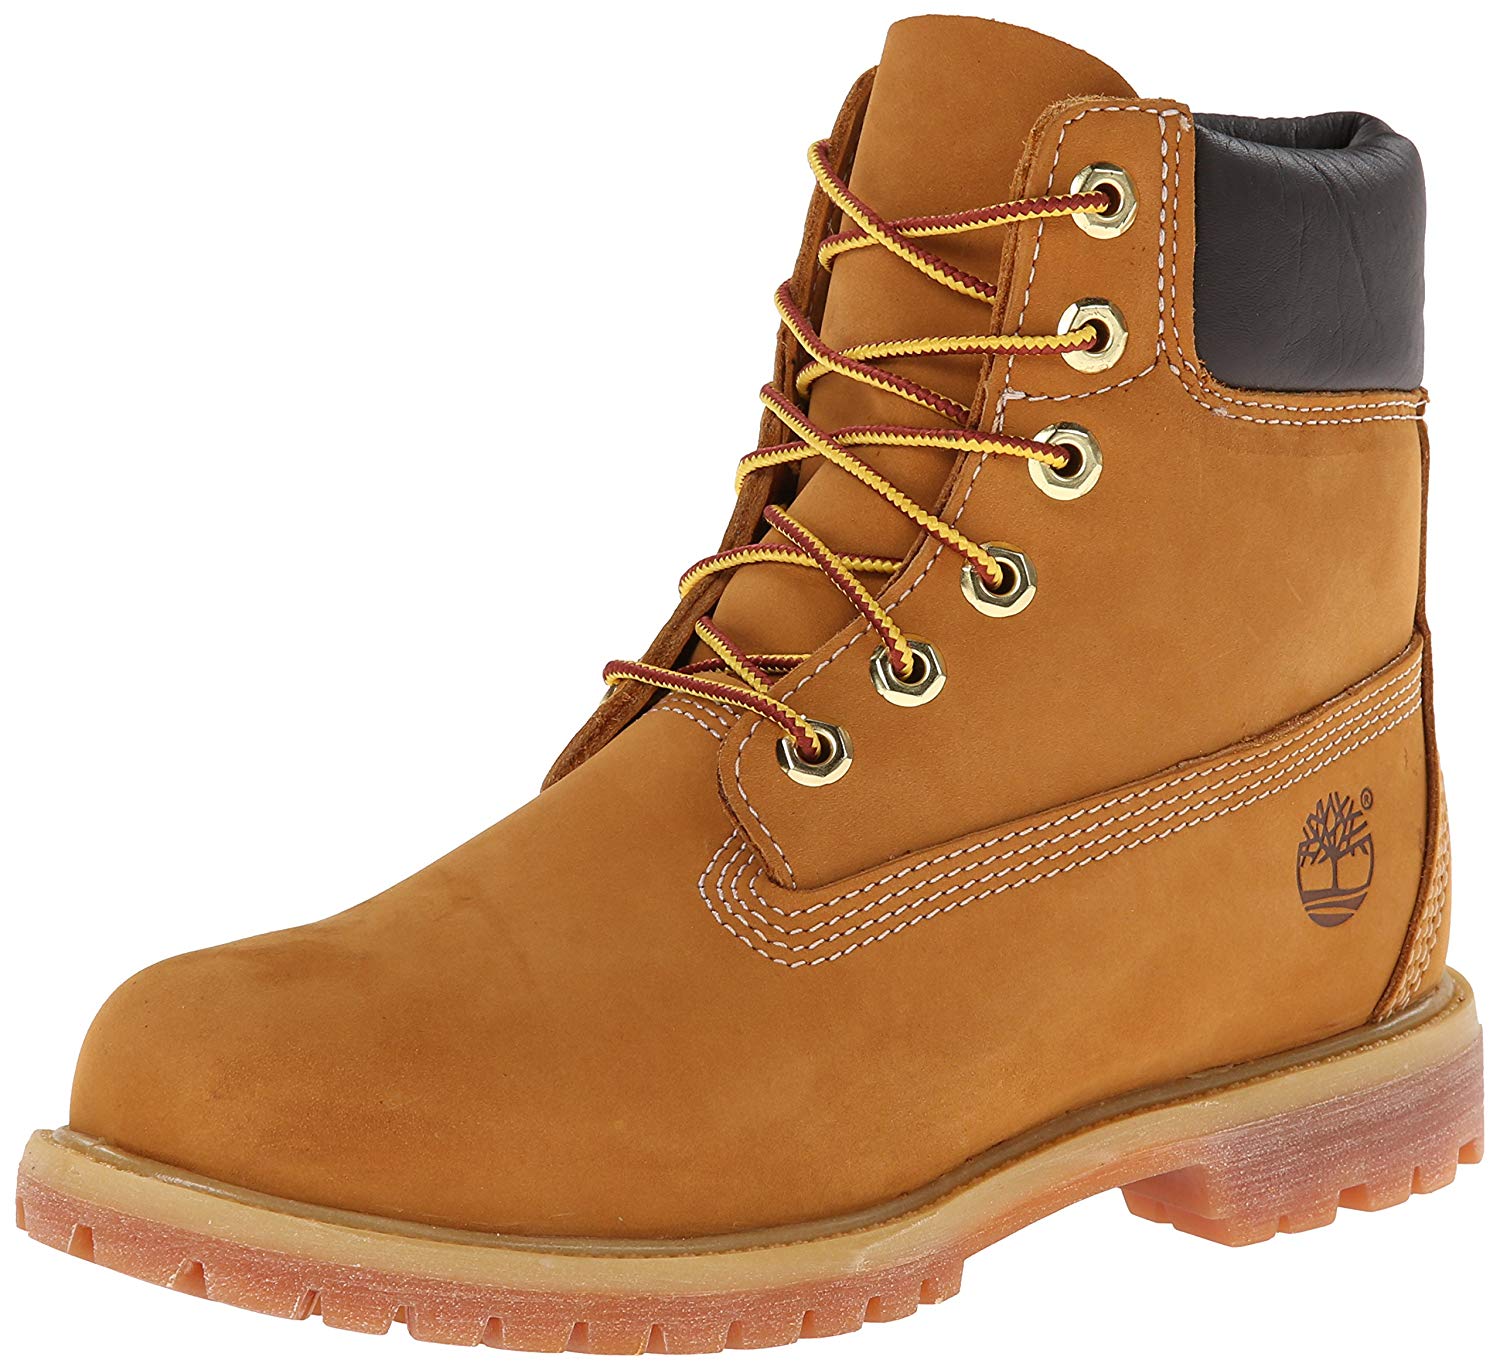 Timberland Womens 6-Inch Premium Boot - Wheat - 8.5 W US 10361